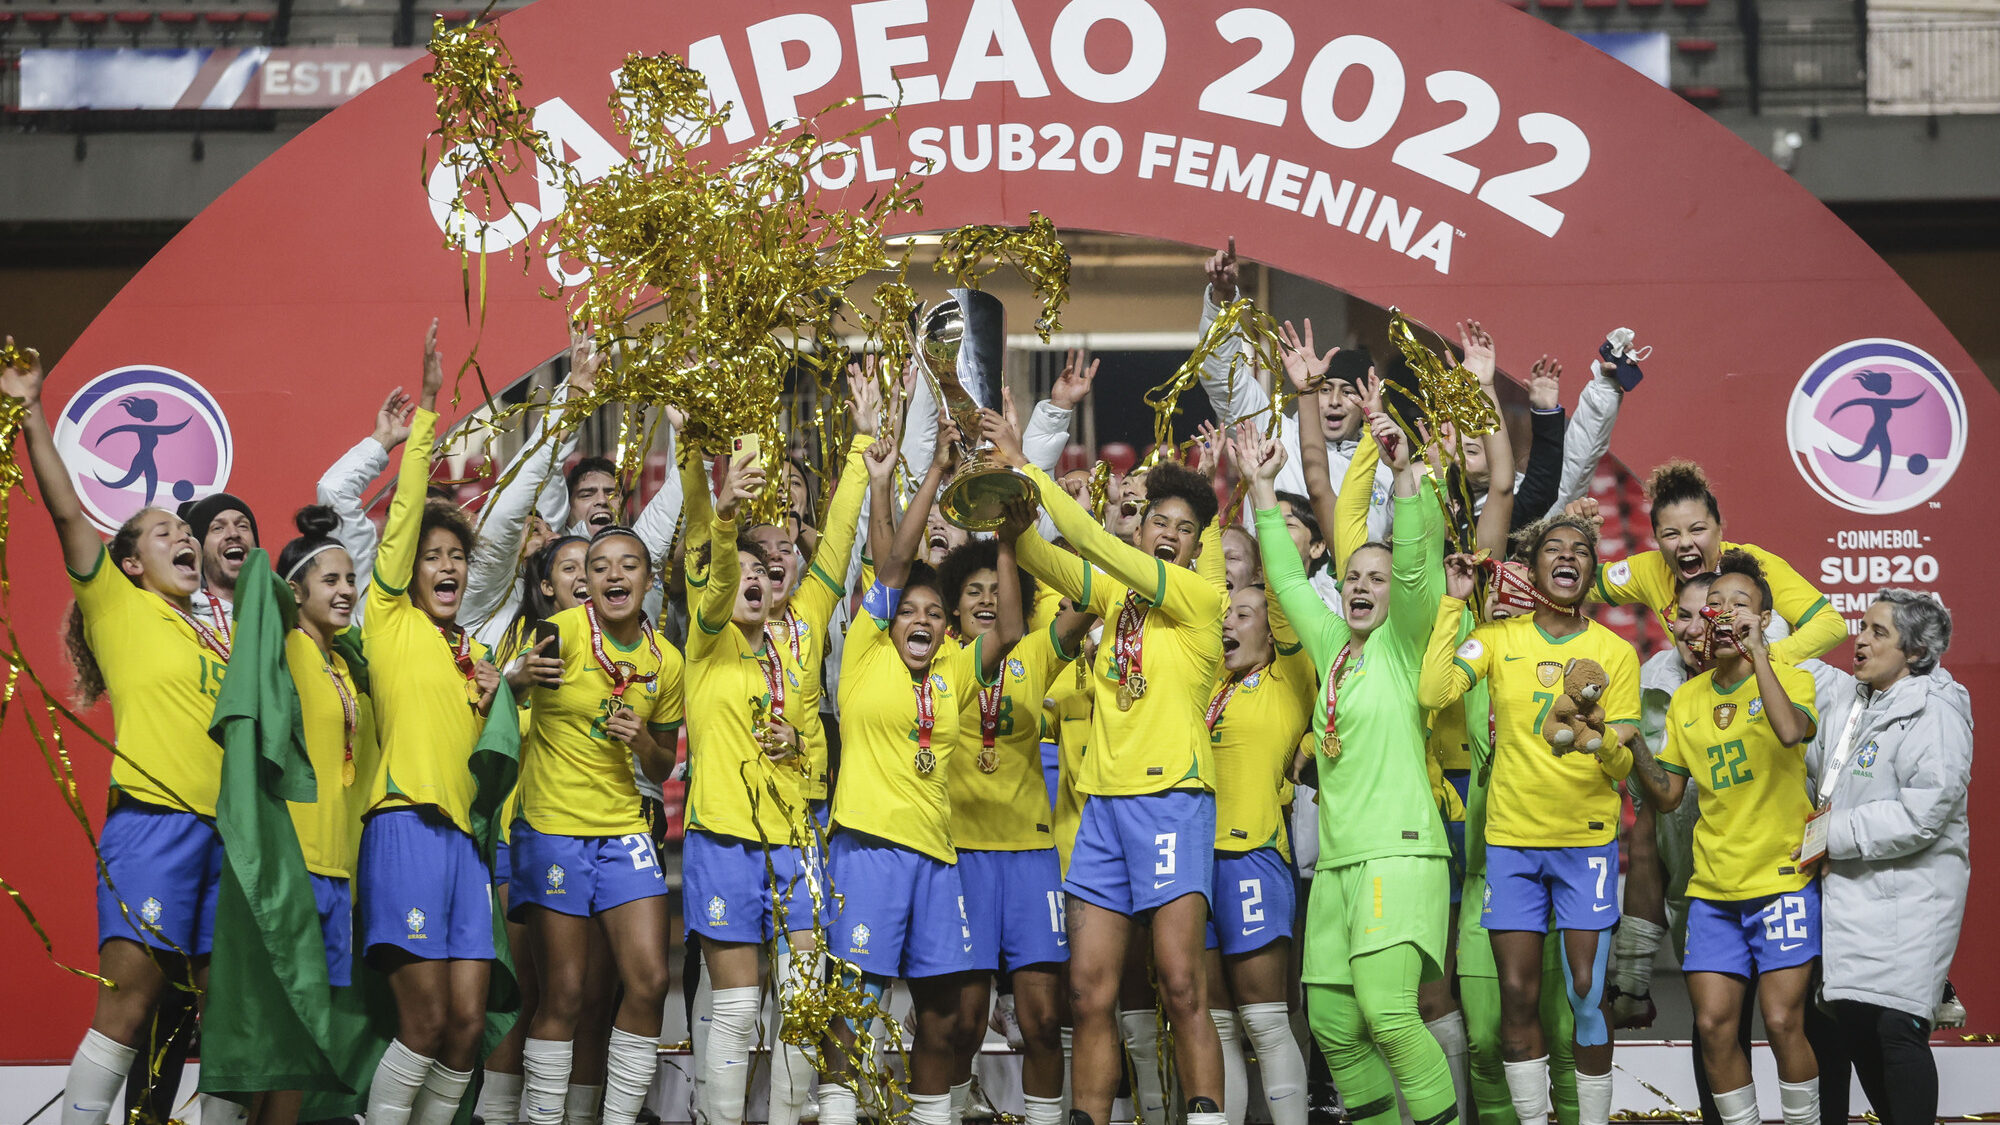 La Selección de Brasil vuelve a coronarse campeona del Sudamericano Femenino Sub-20